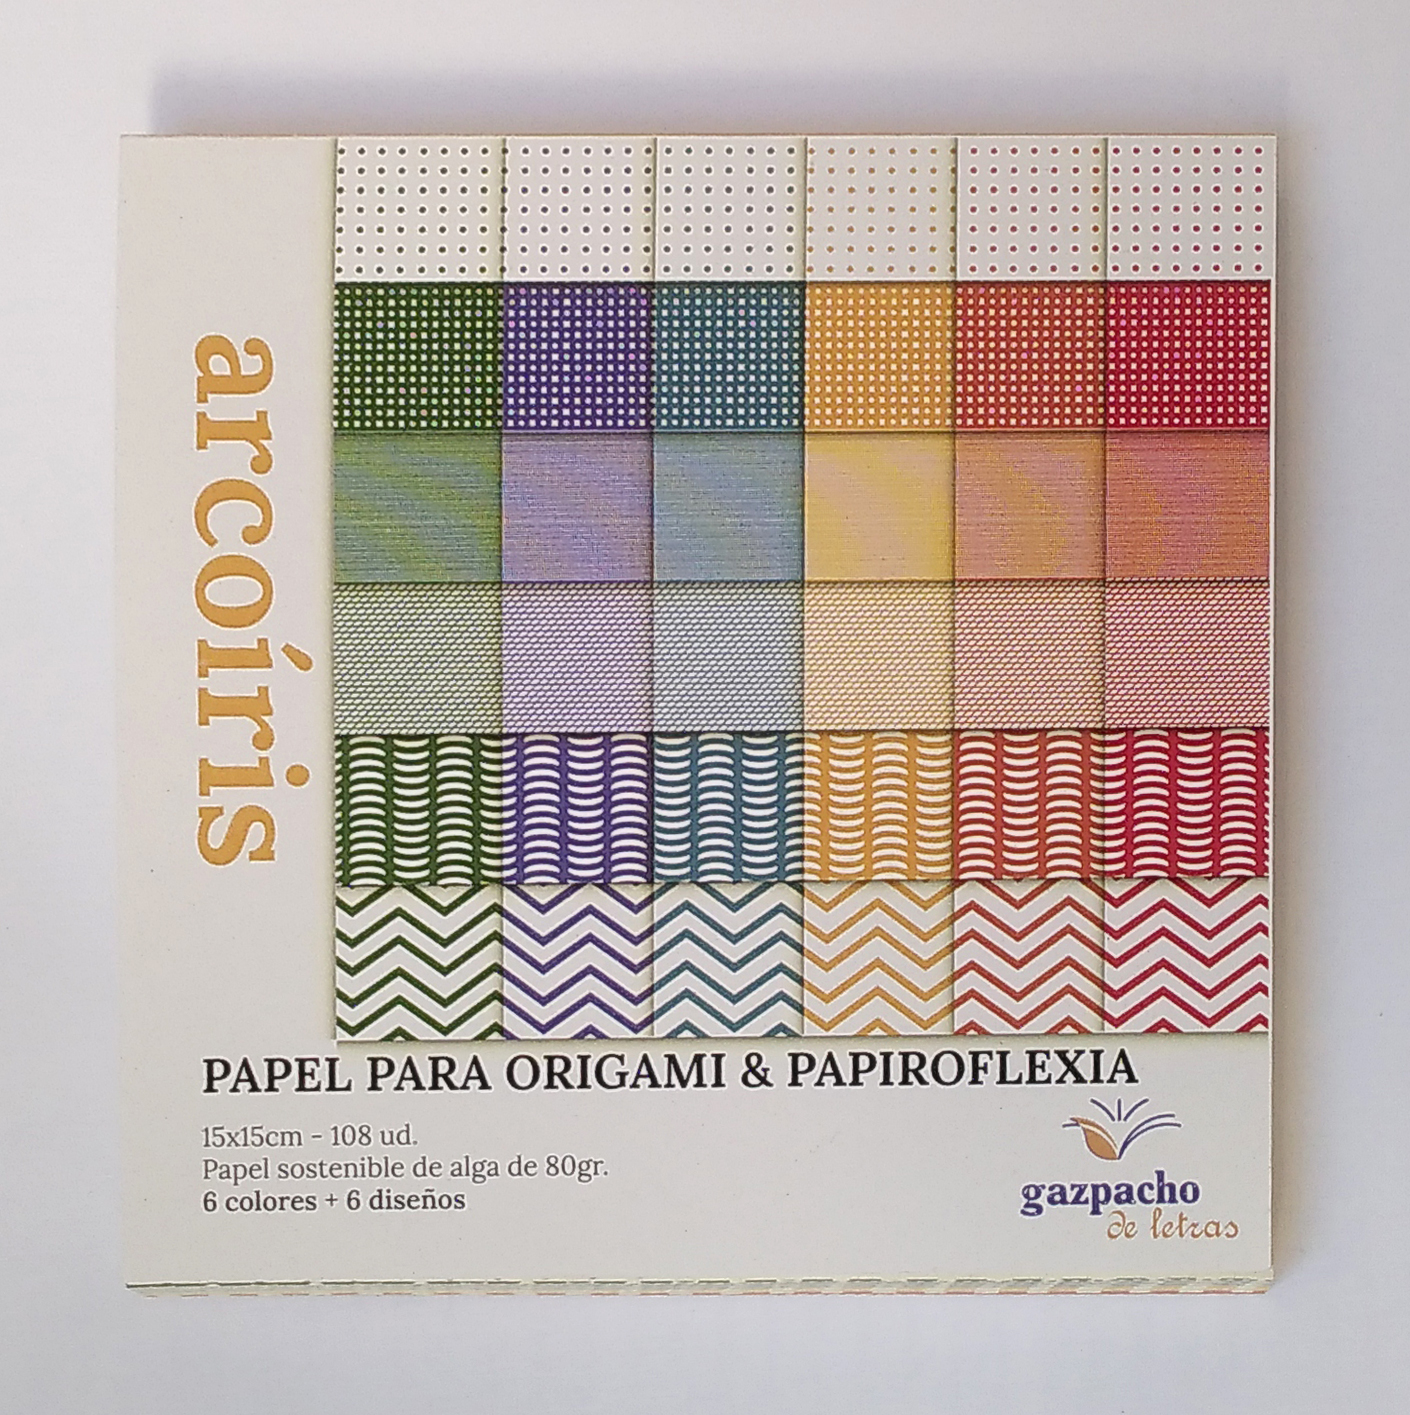 limpiar perdonar Corresponsal Papel para origami y papiroflexia - Gazpacho de letras